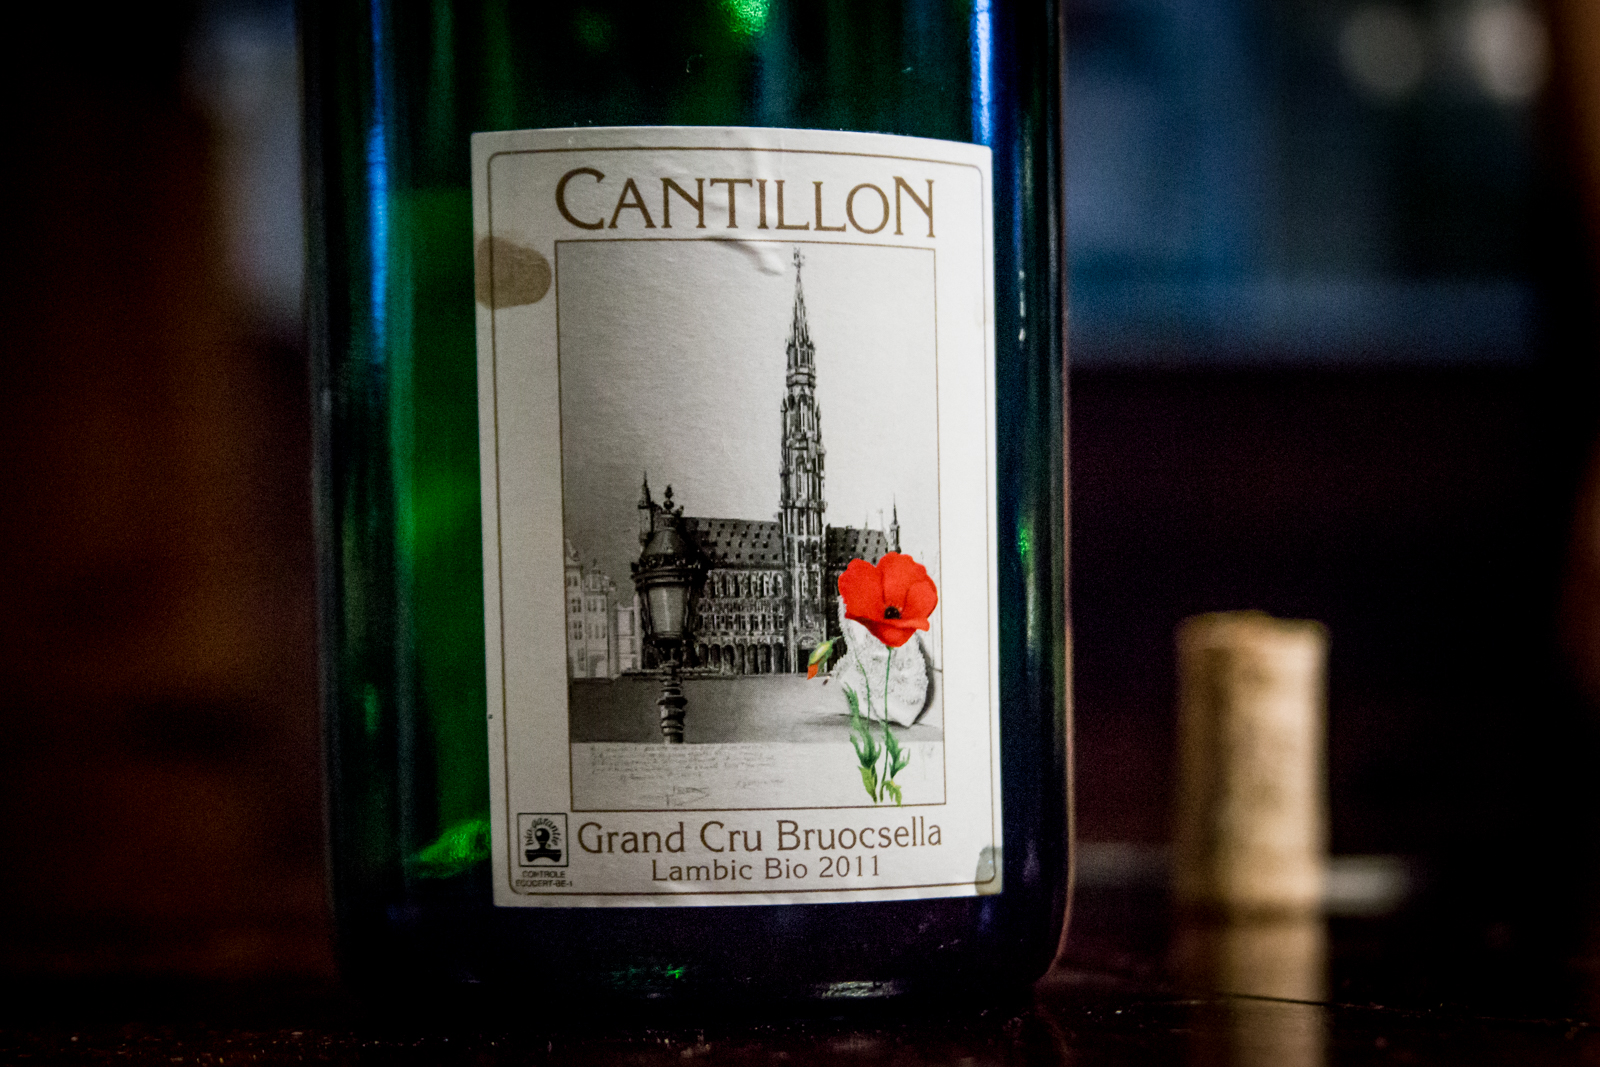 Cantillon - Grand Cru Bruocsella